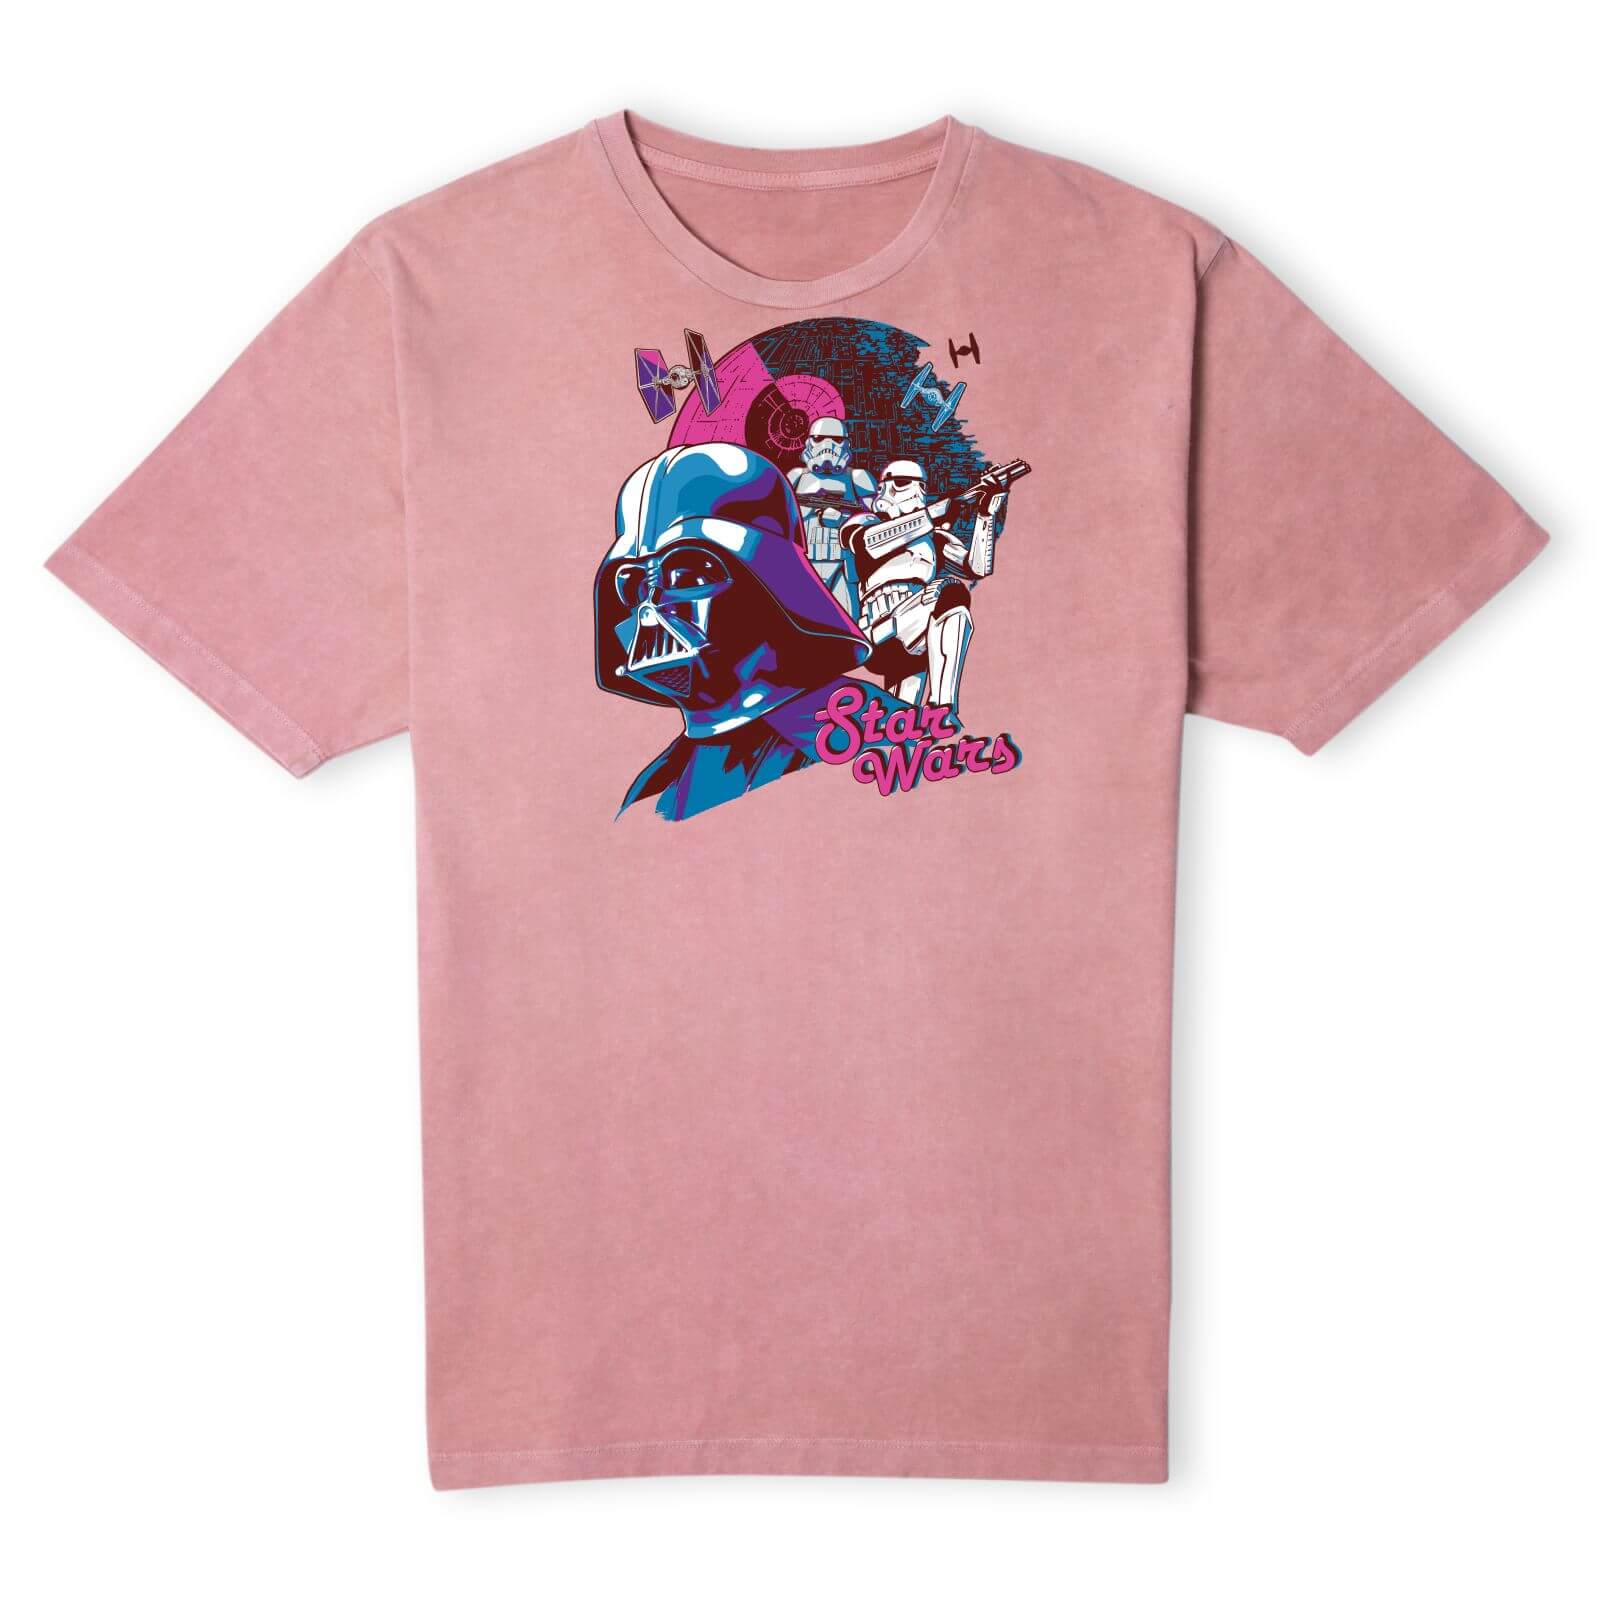 Star Wars Darth Vader Unisex T-Shirt - Pink Acid Wash - S - Pink Acid Wash